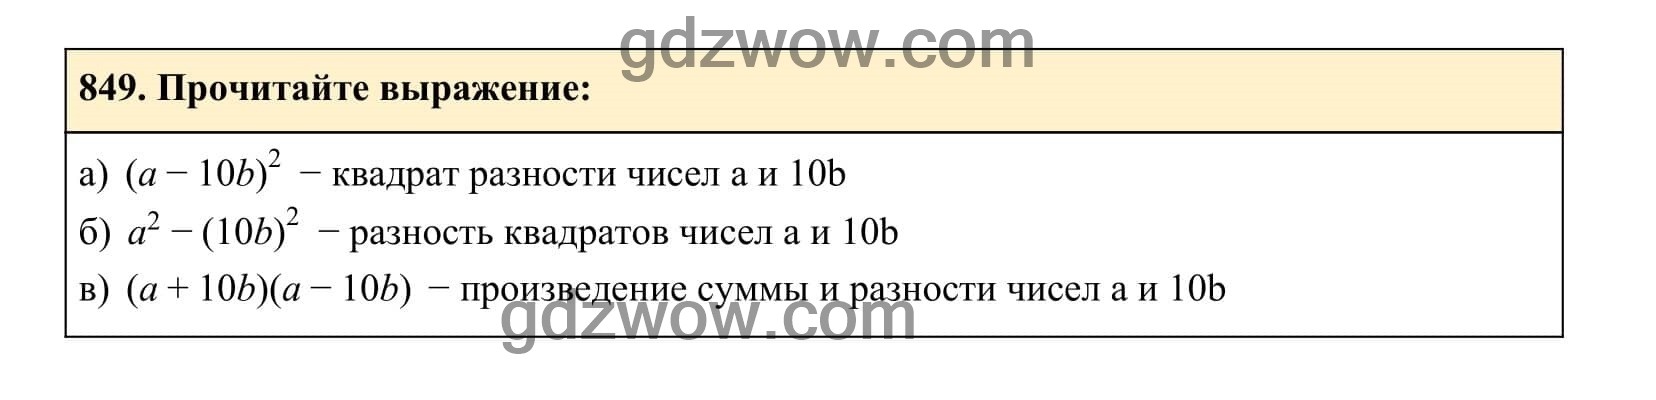 Упражнение 849 - ГДЗ по Алгебре 7 класс Учебник Макарычев (решебник) - GDZwow